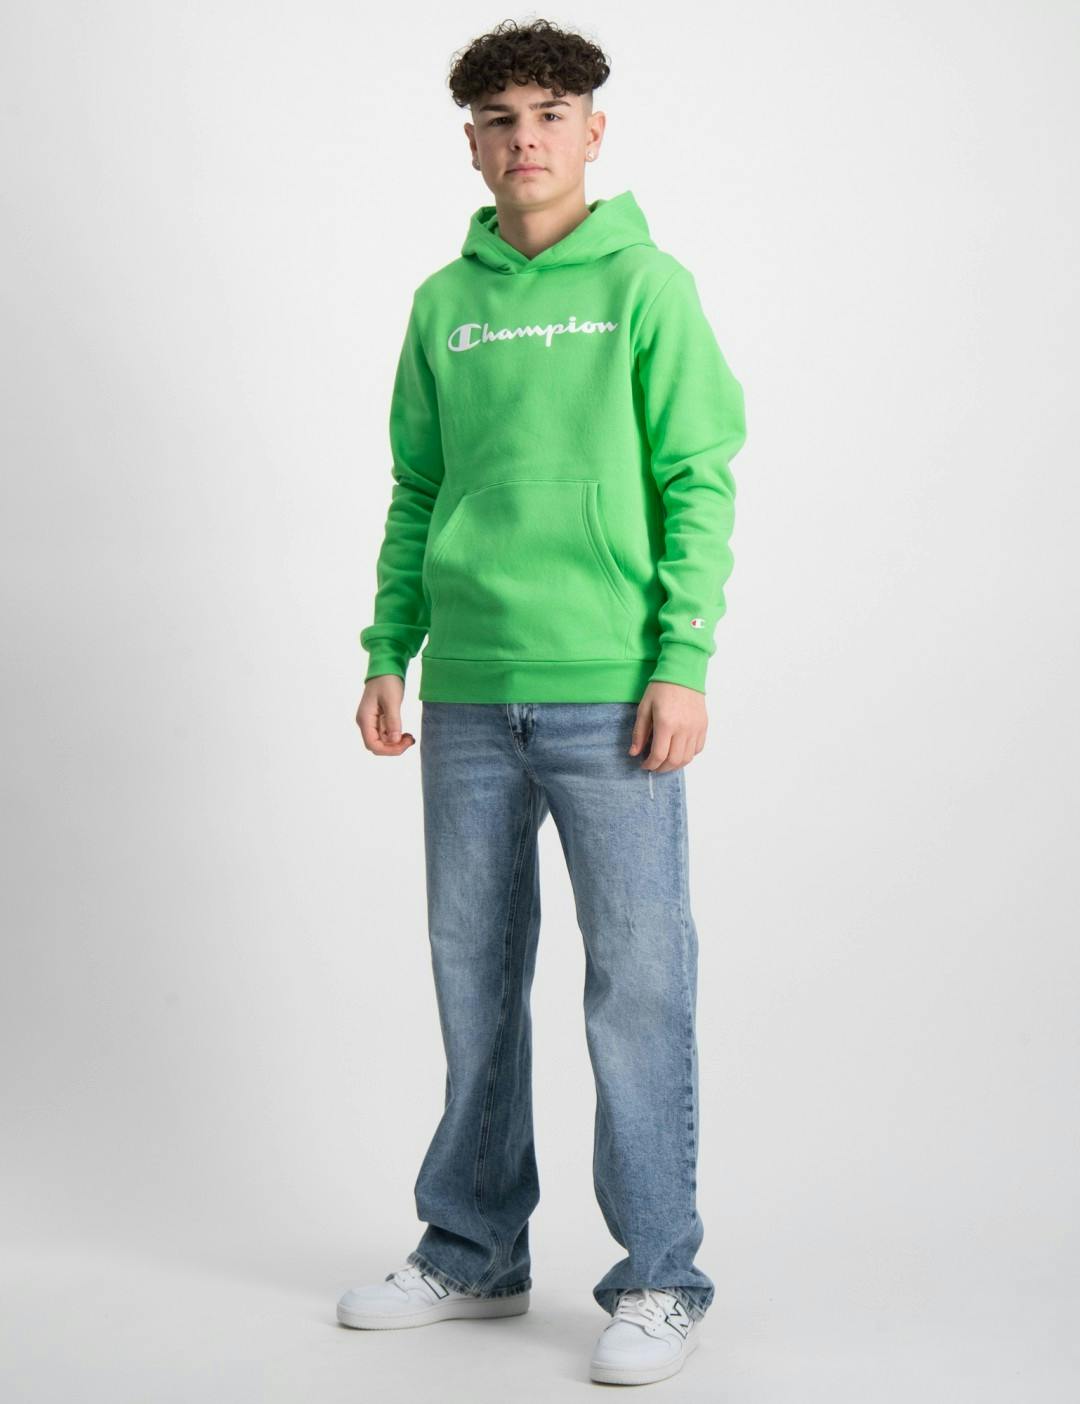 Grün Hooded Sweatshirt für Jungen | Kids Brand Store